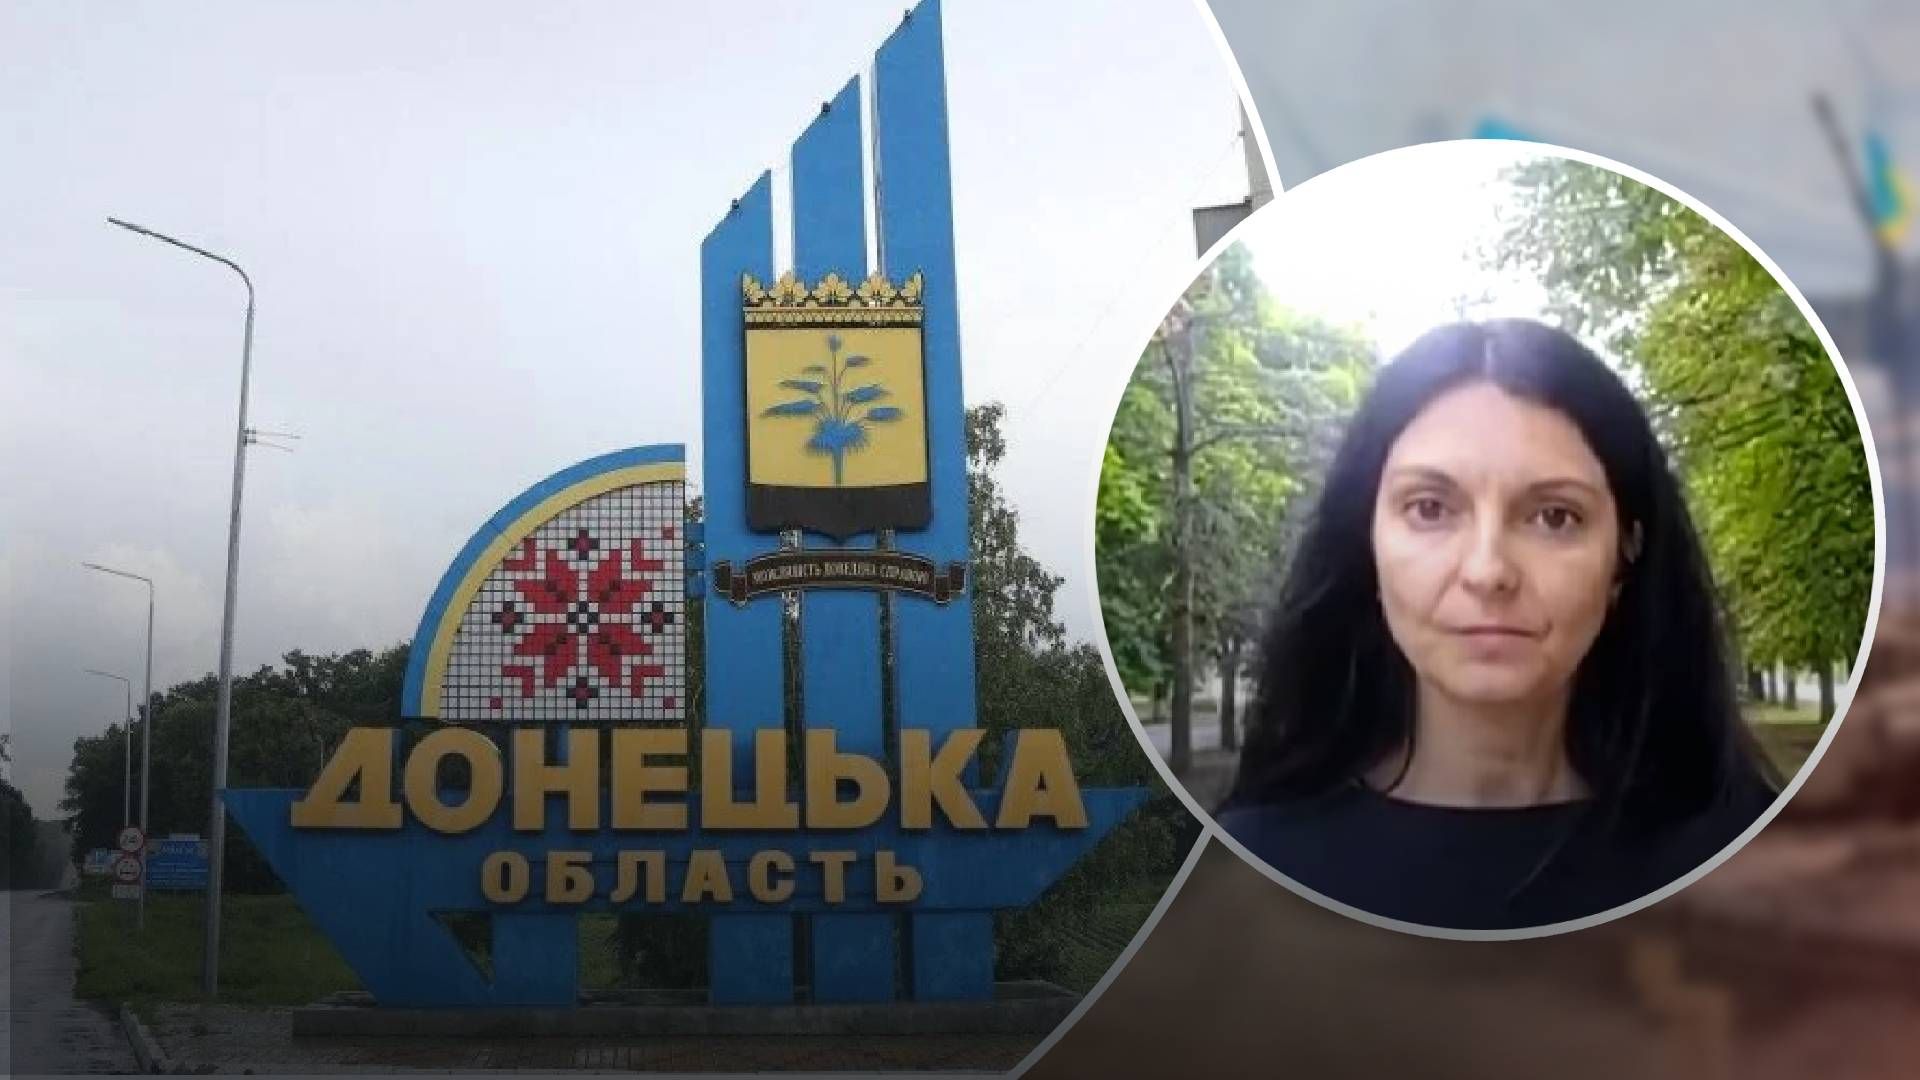 Люди отримують супровід, – у Донецькій ОВА розповіли деталі про обов'язкову евакуацію